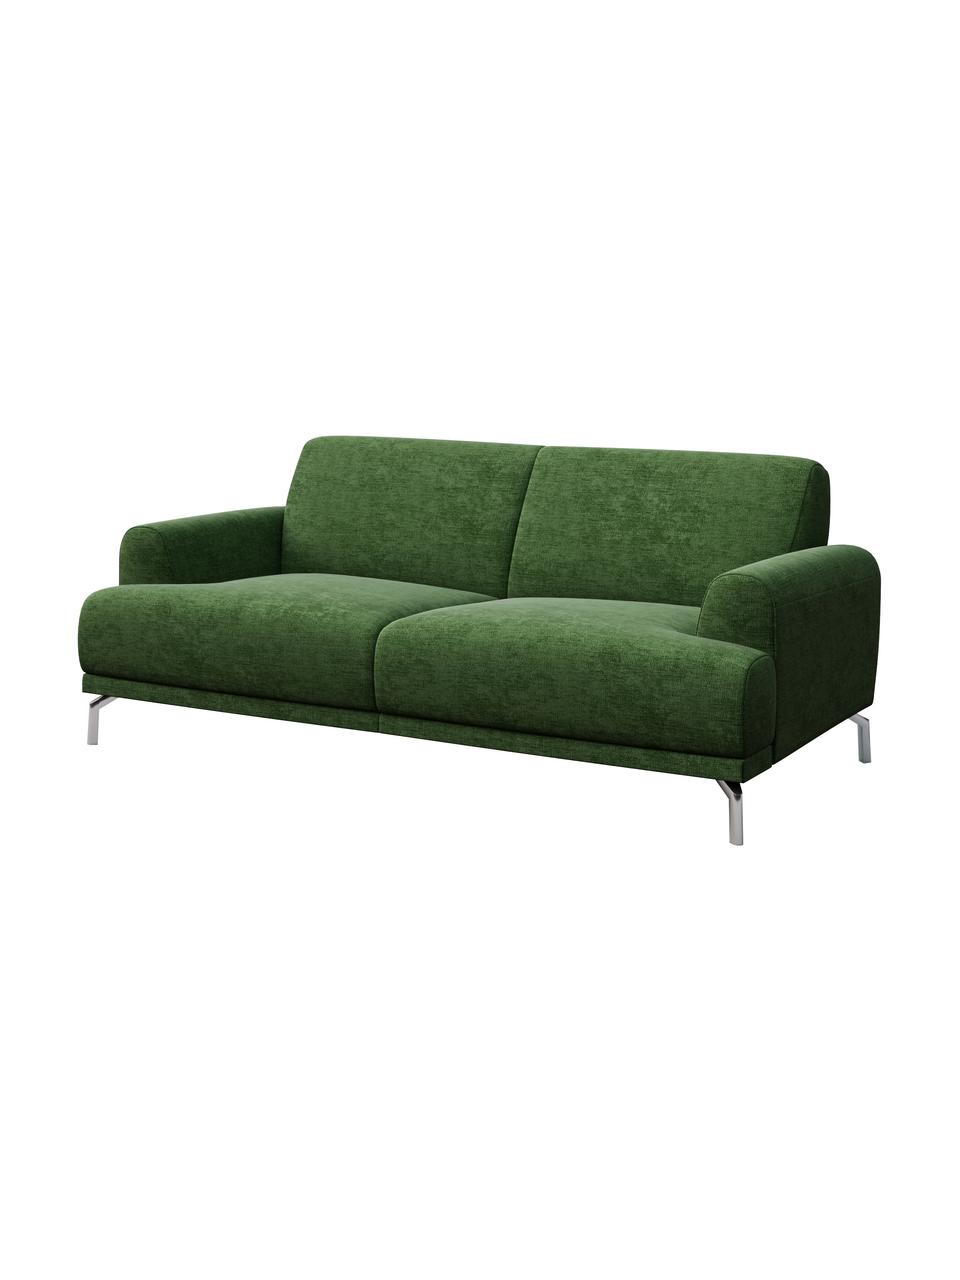 Sofa z Zero Spot System Puzo (2-osobowa), Tapicerka: 100% poliester z Zero Spo, Nogi: metal lakierowany, Ciemnozielony, S 170 x G 84 cm